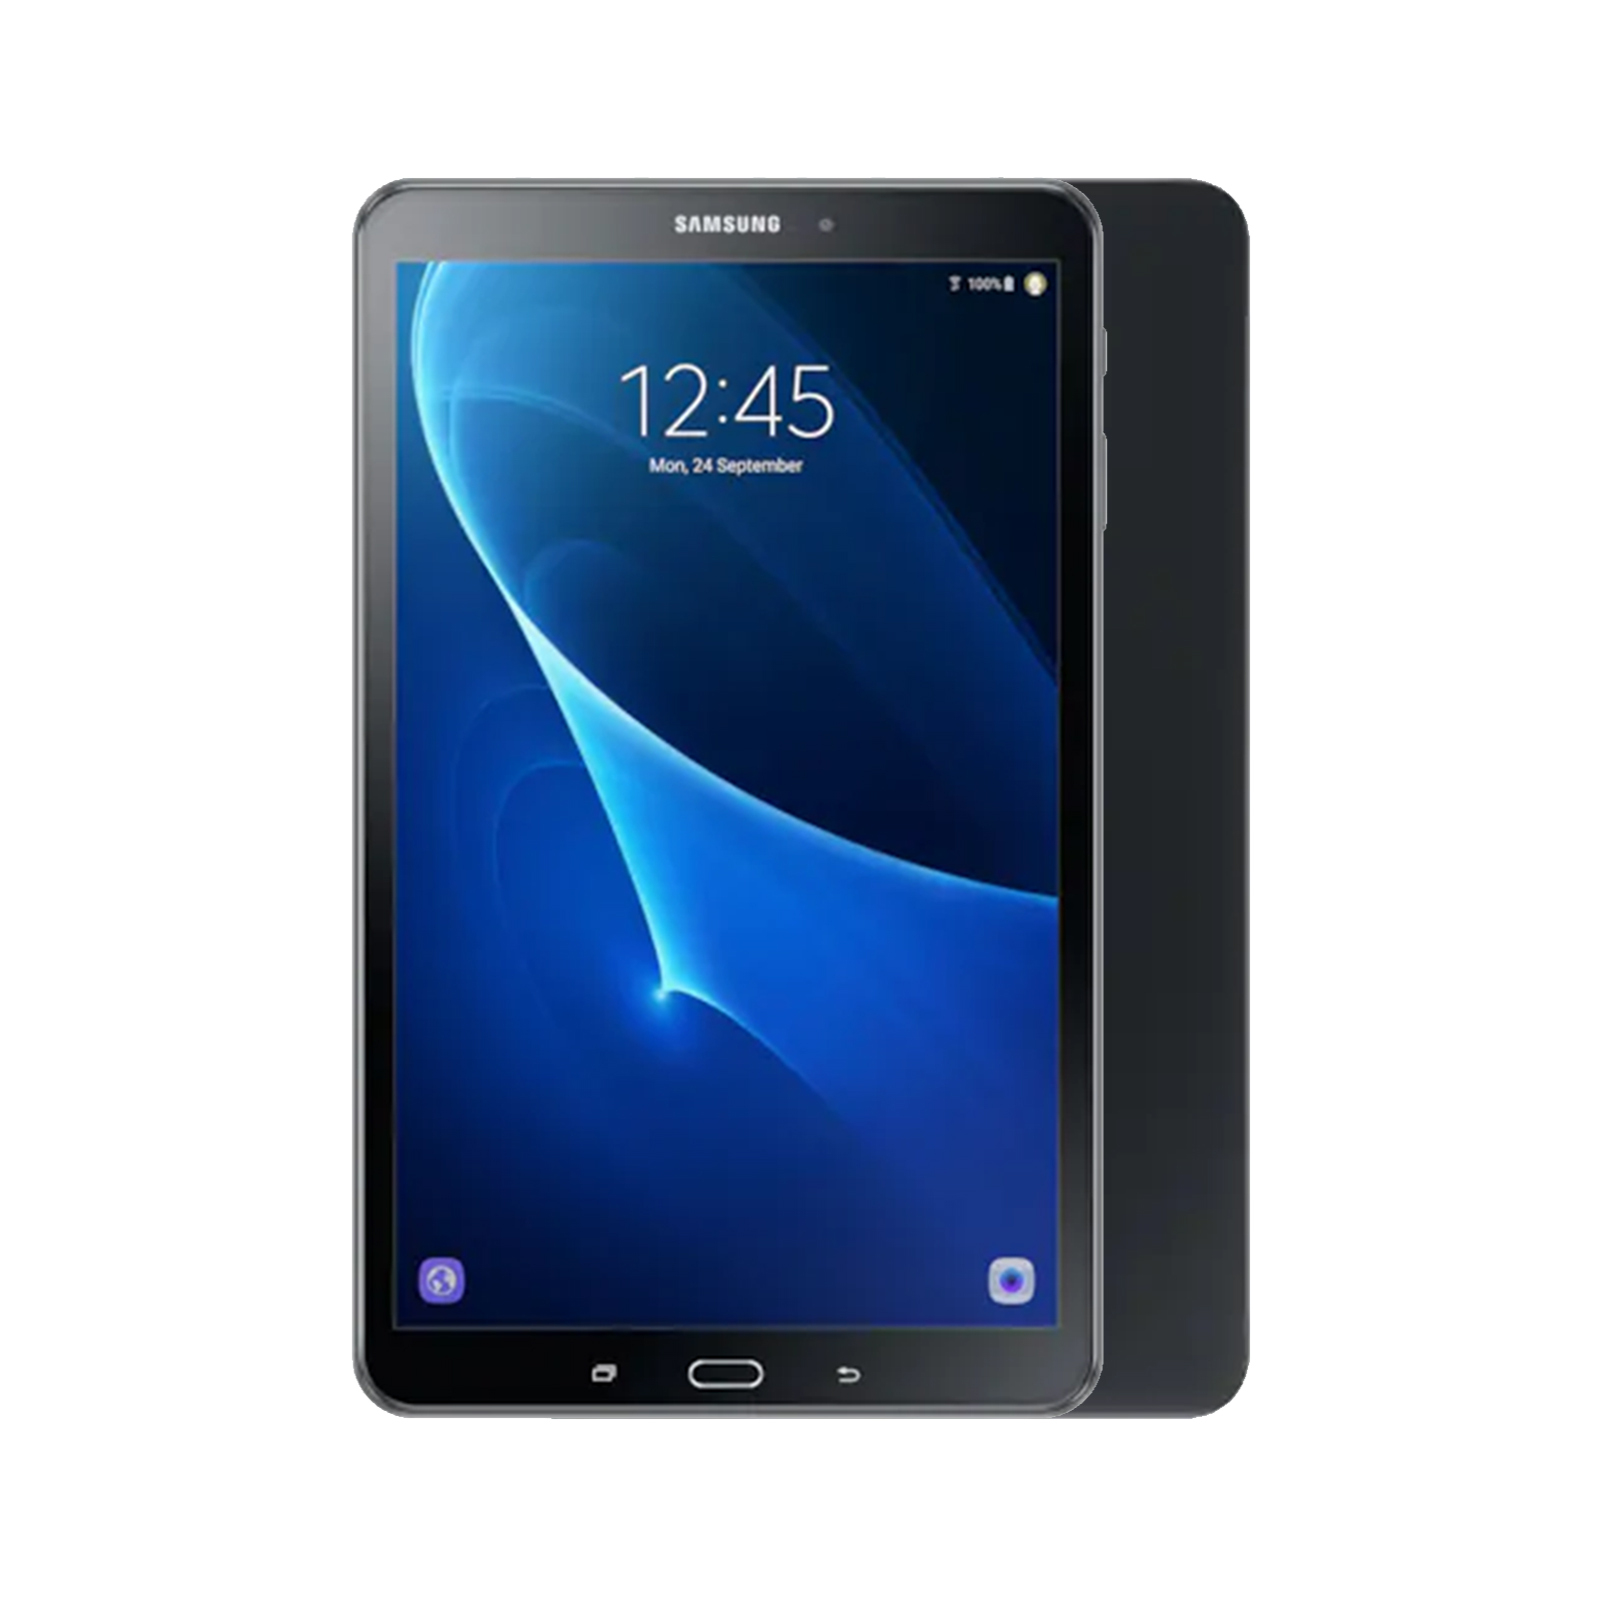 Samsung Galaxy Tab A 10.1 (2019) SM-T510 [WiFi] [64GB] [Black] [As New]